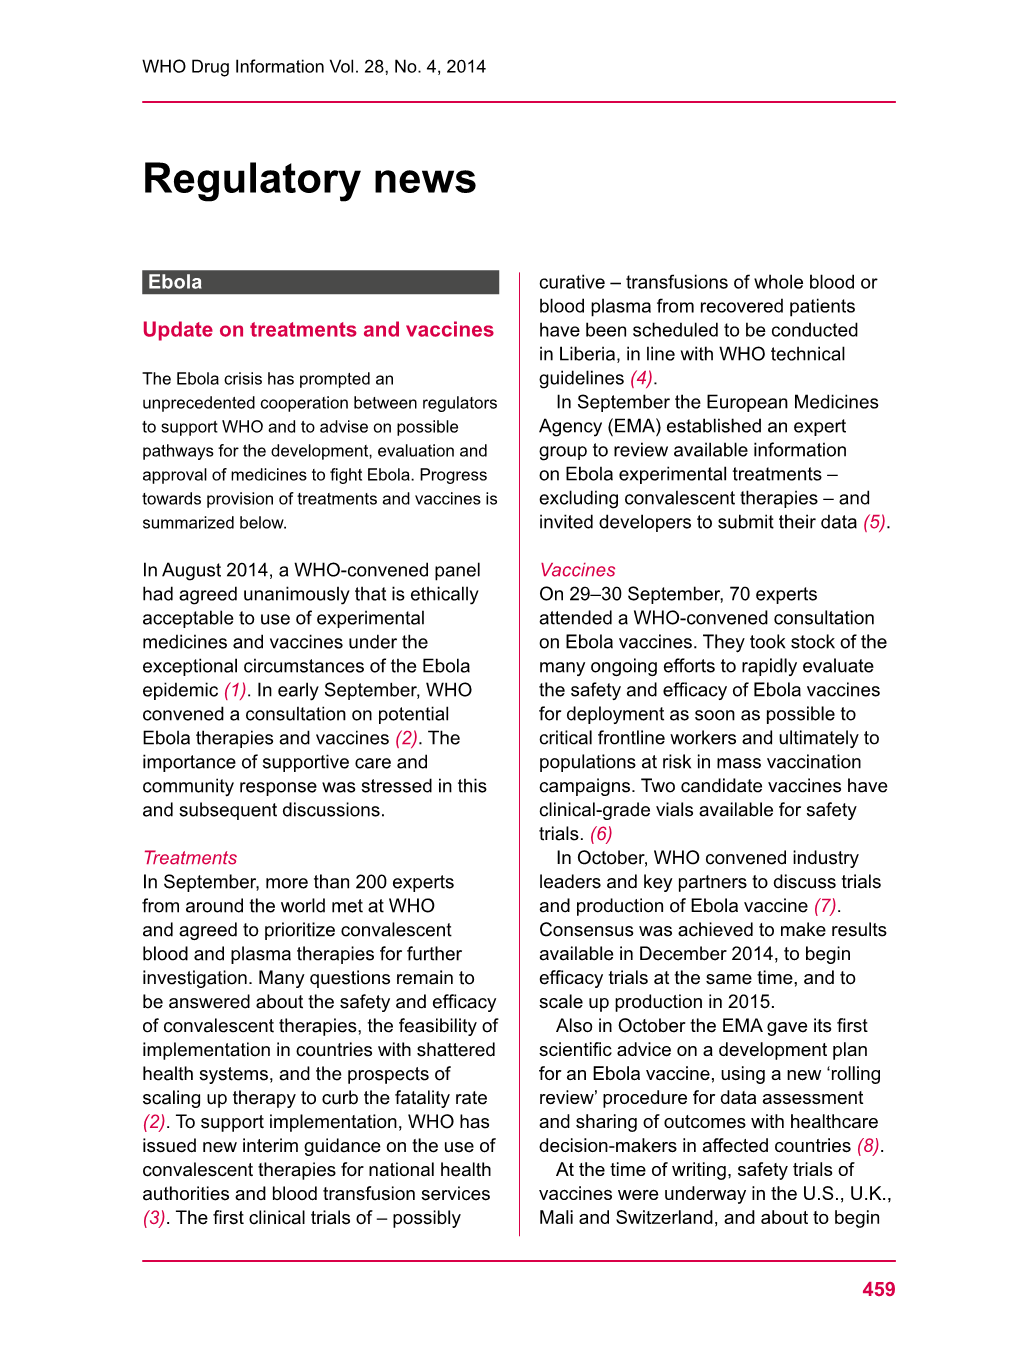 Regulatory News